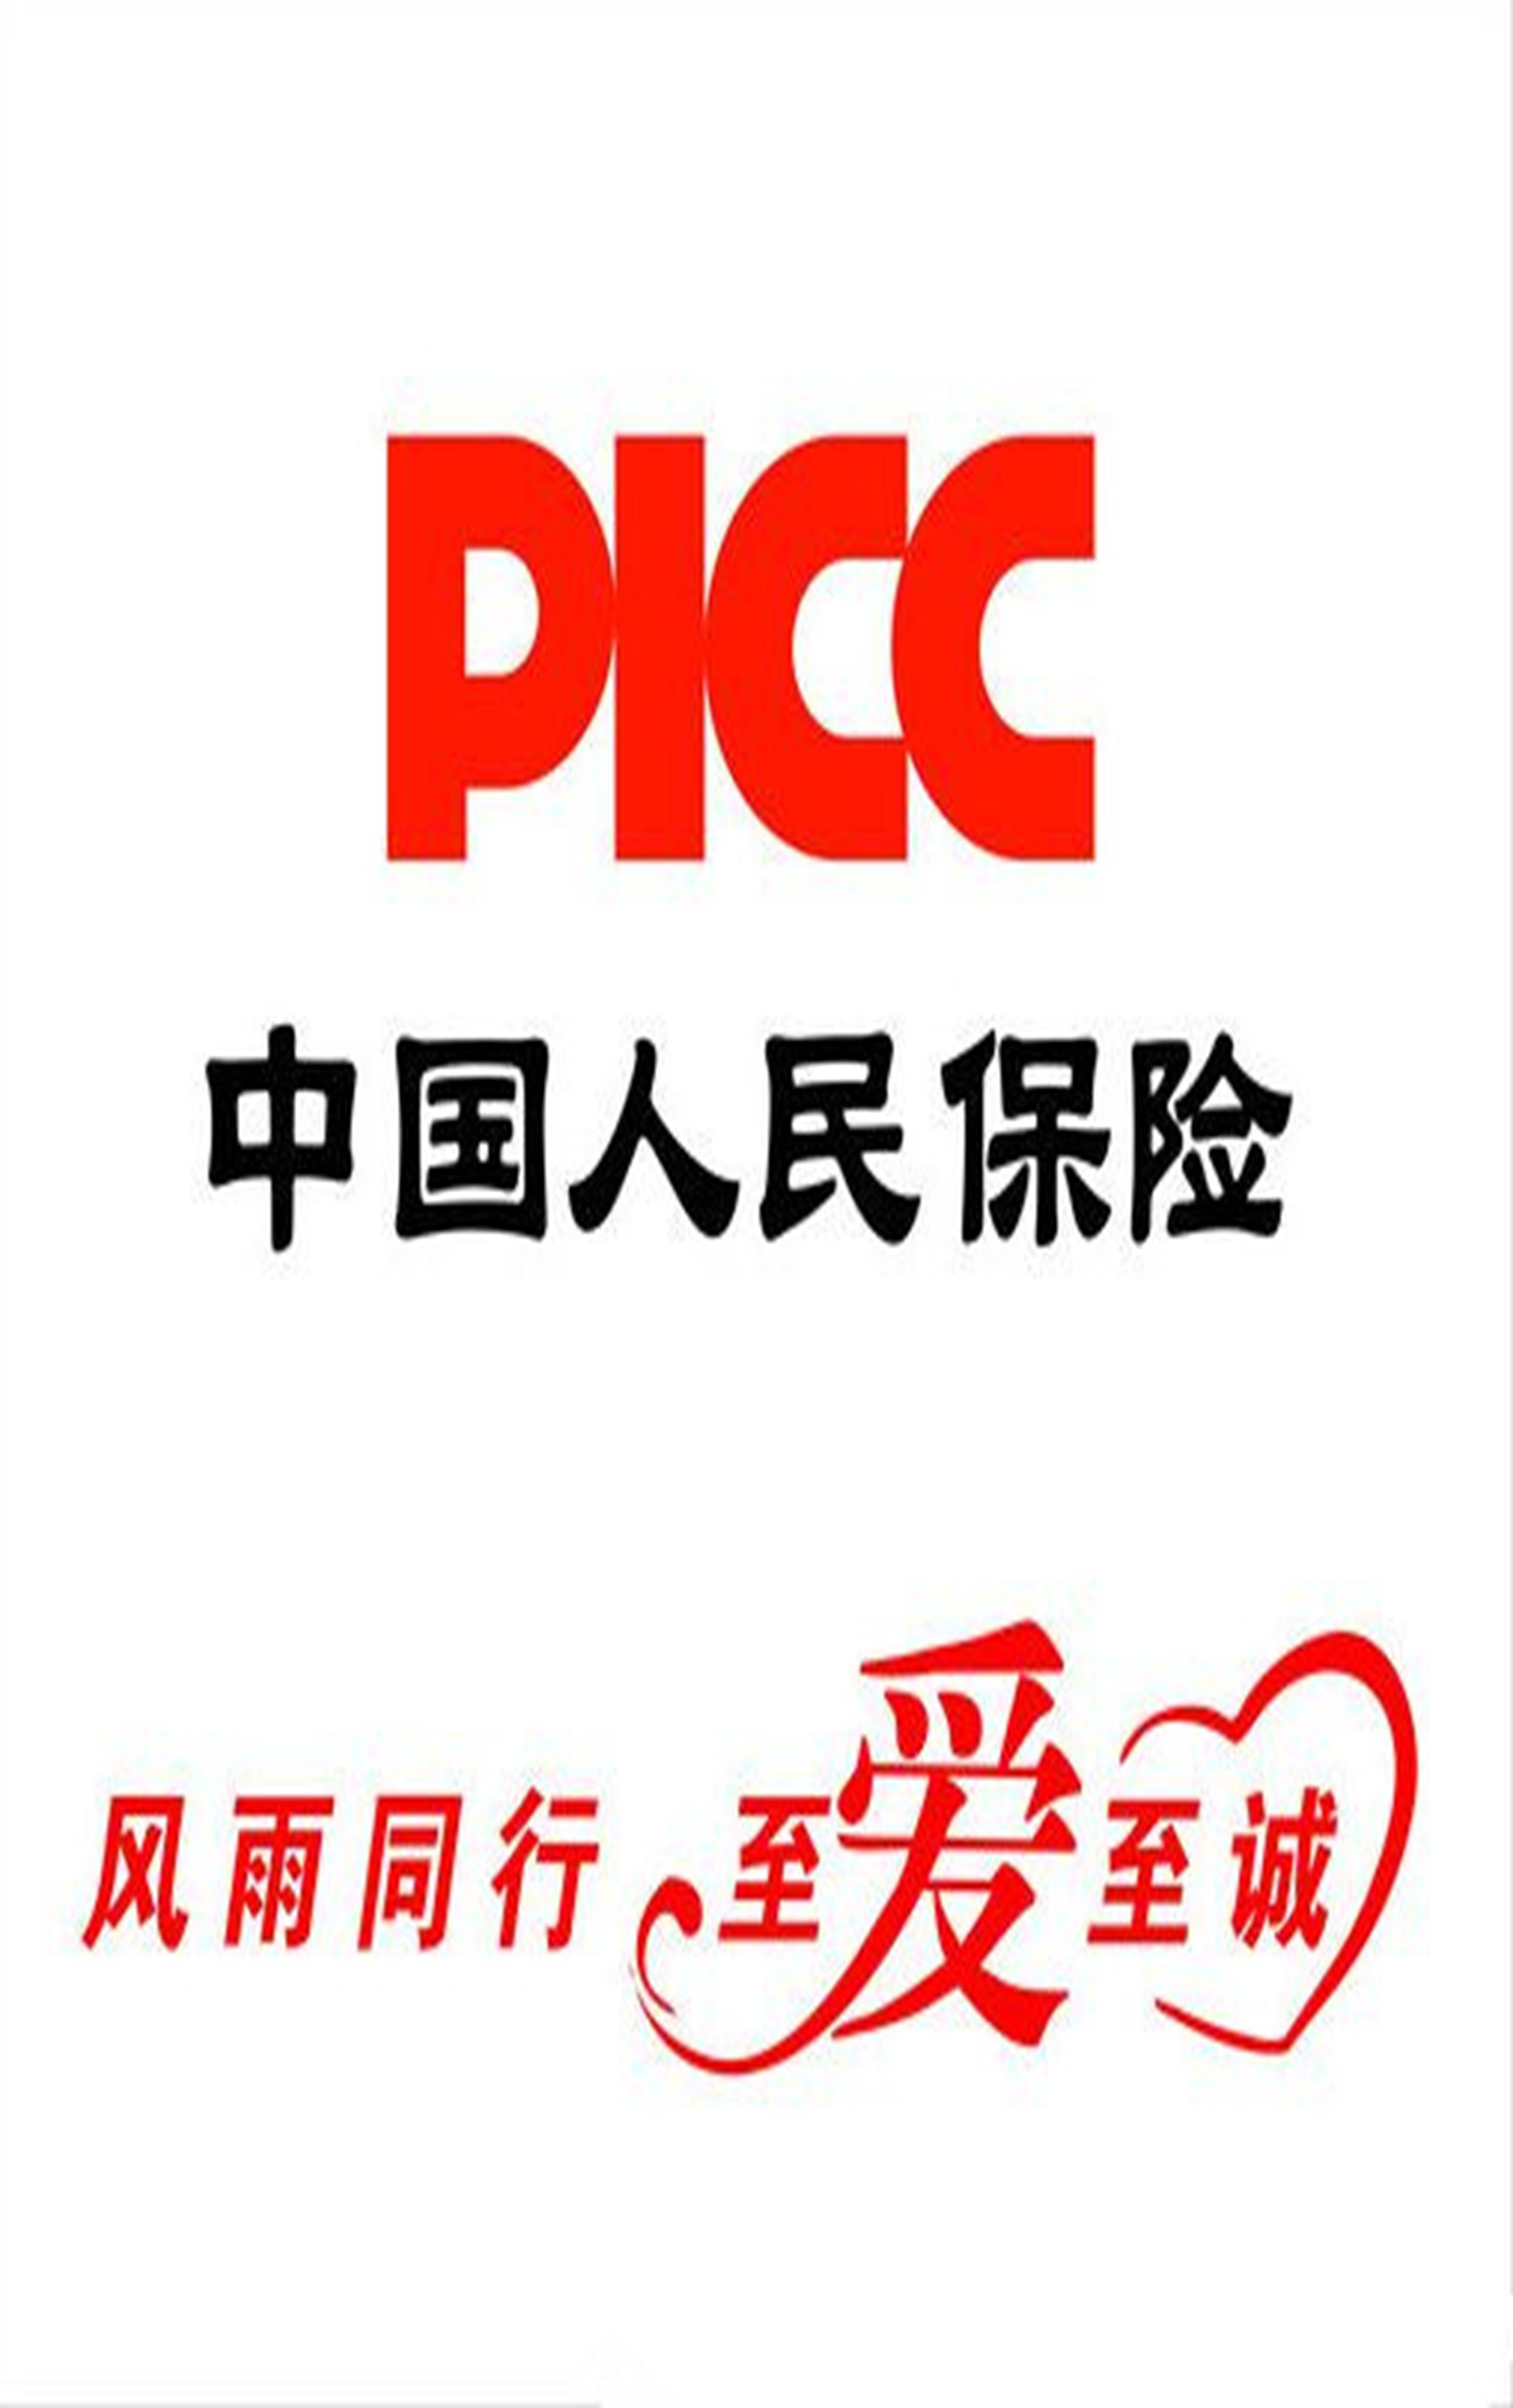 中国人保图标大图logo图片